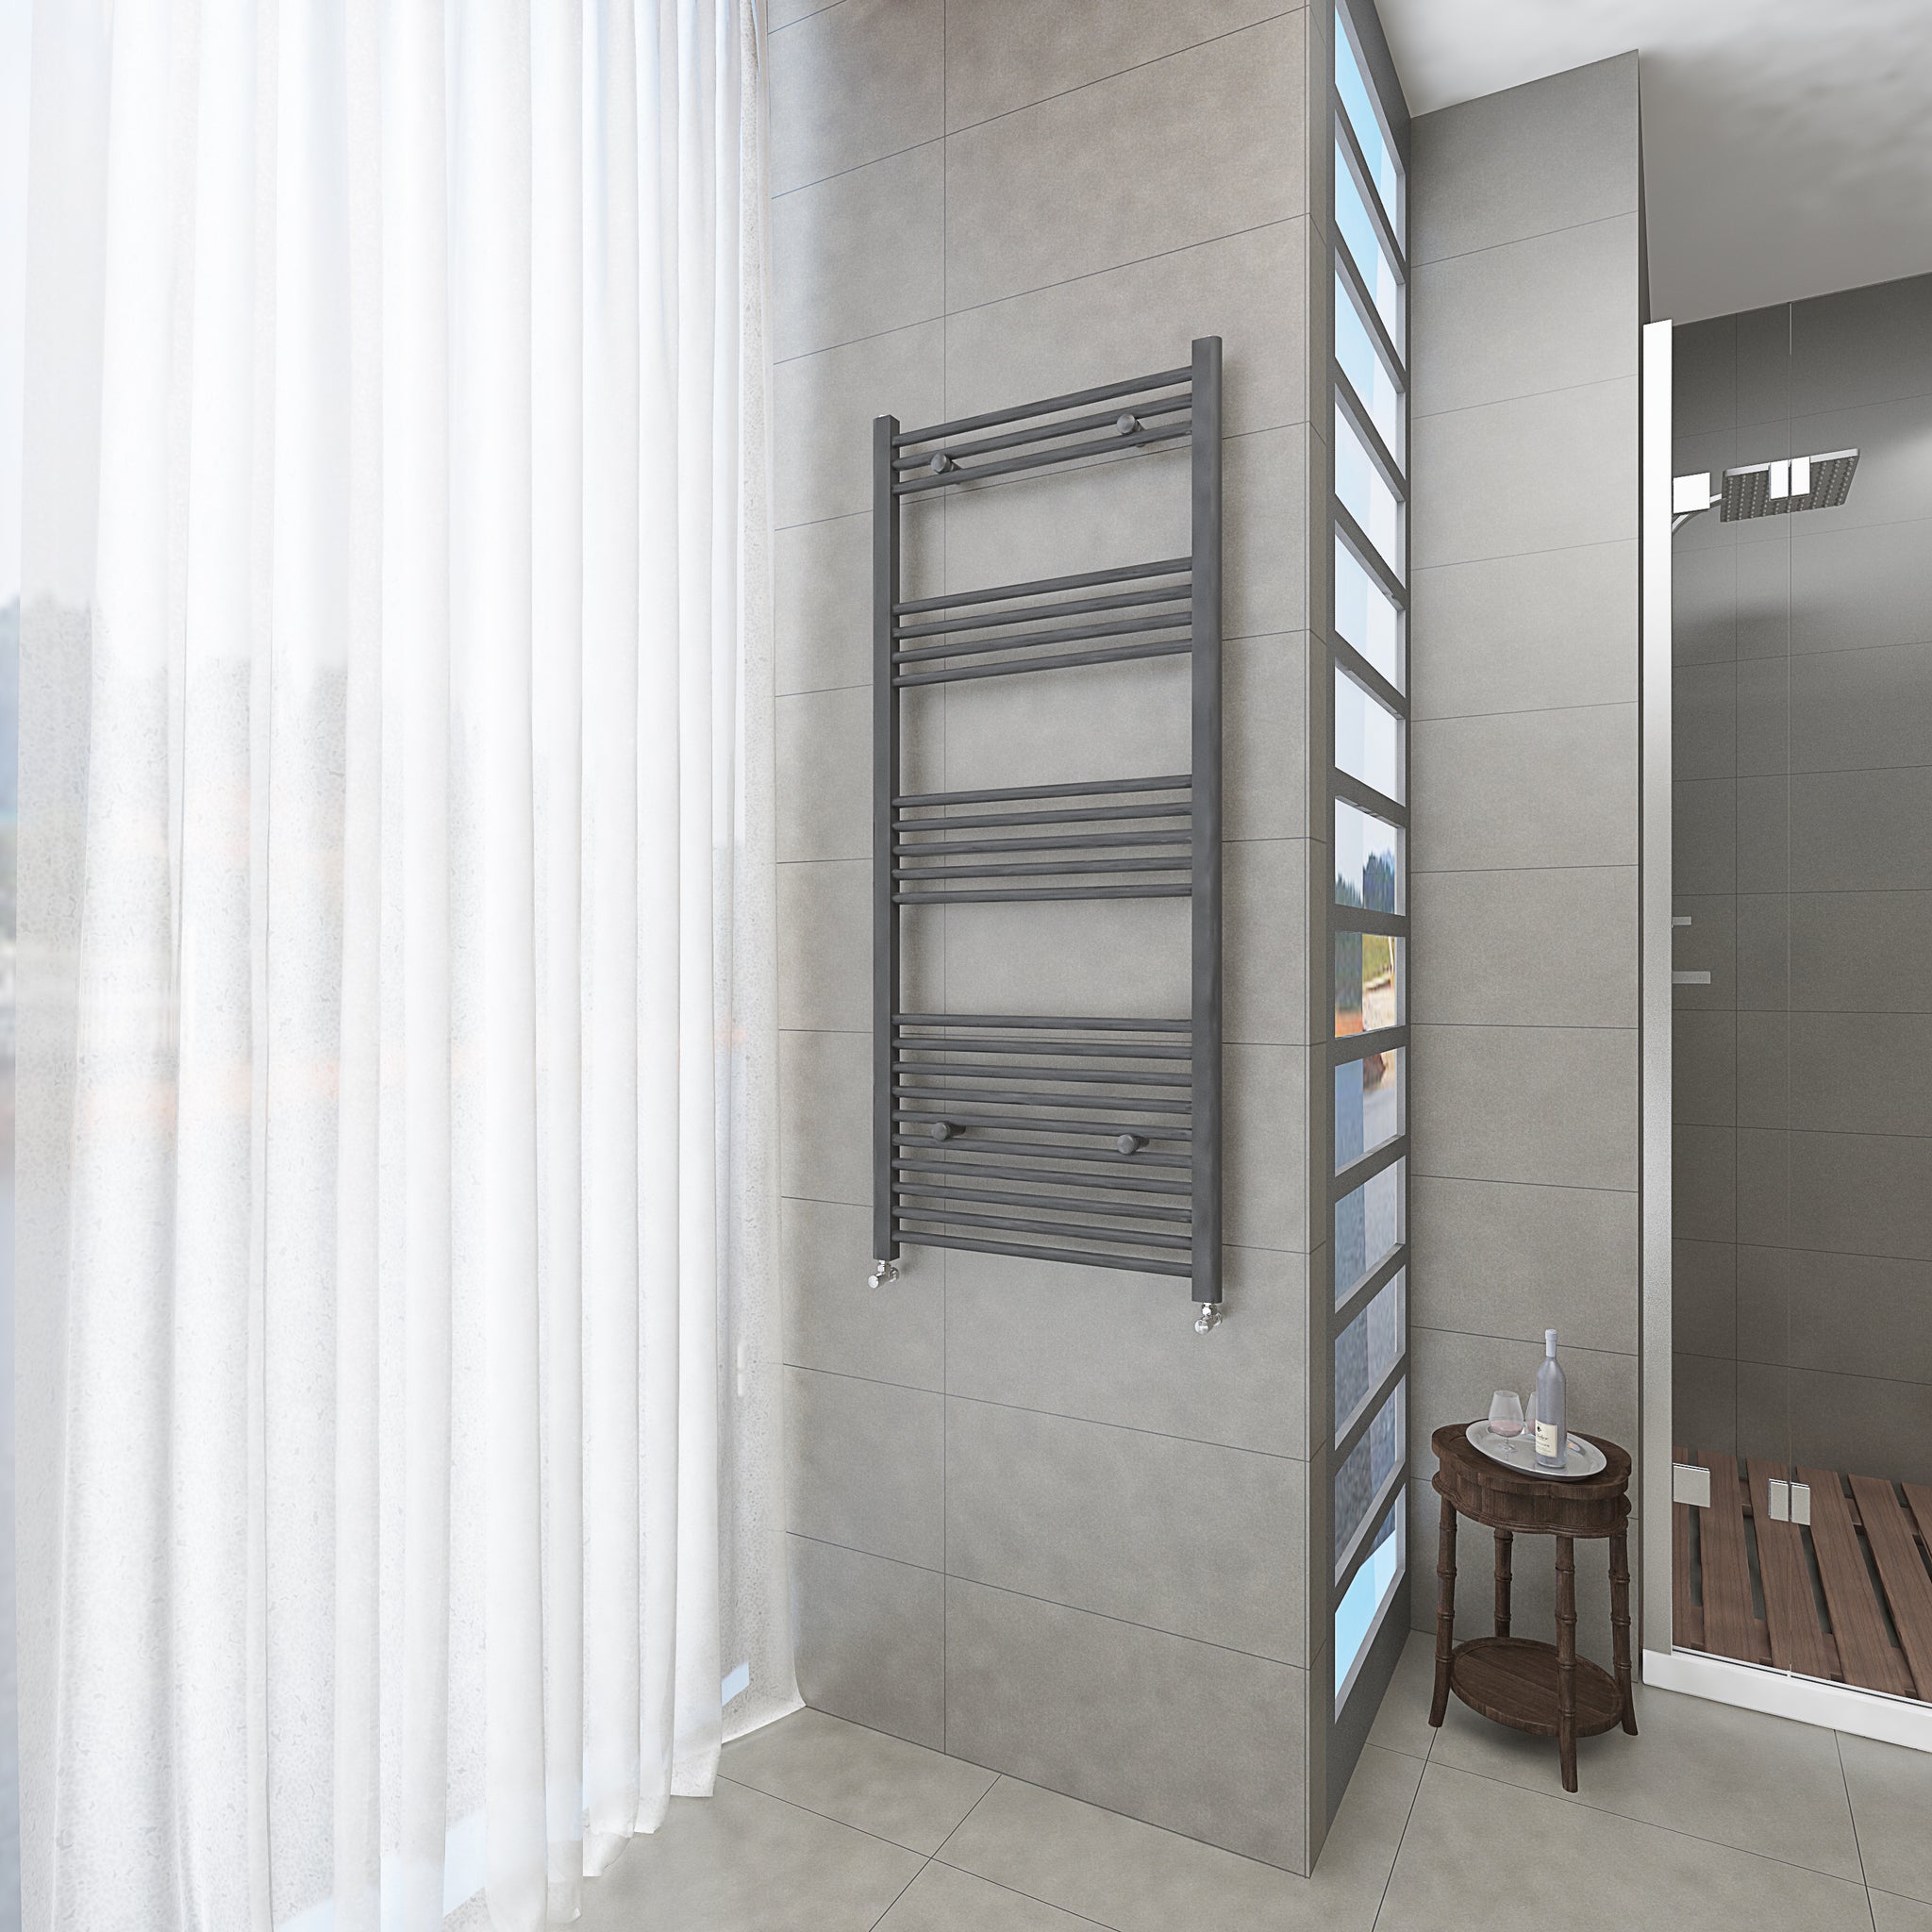 Badheizkörper Grau/Anthrazit - 140x60 CM Heizkörper und Handtuchtrockner in einem - Seitlicher Anschluss - Rauchfreie Kohleheizung für das Badezimmer